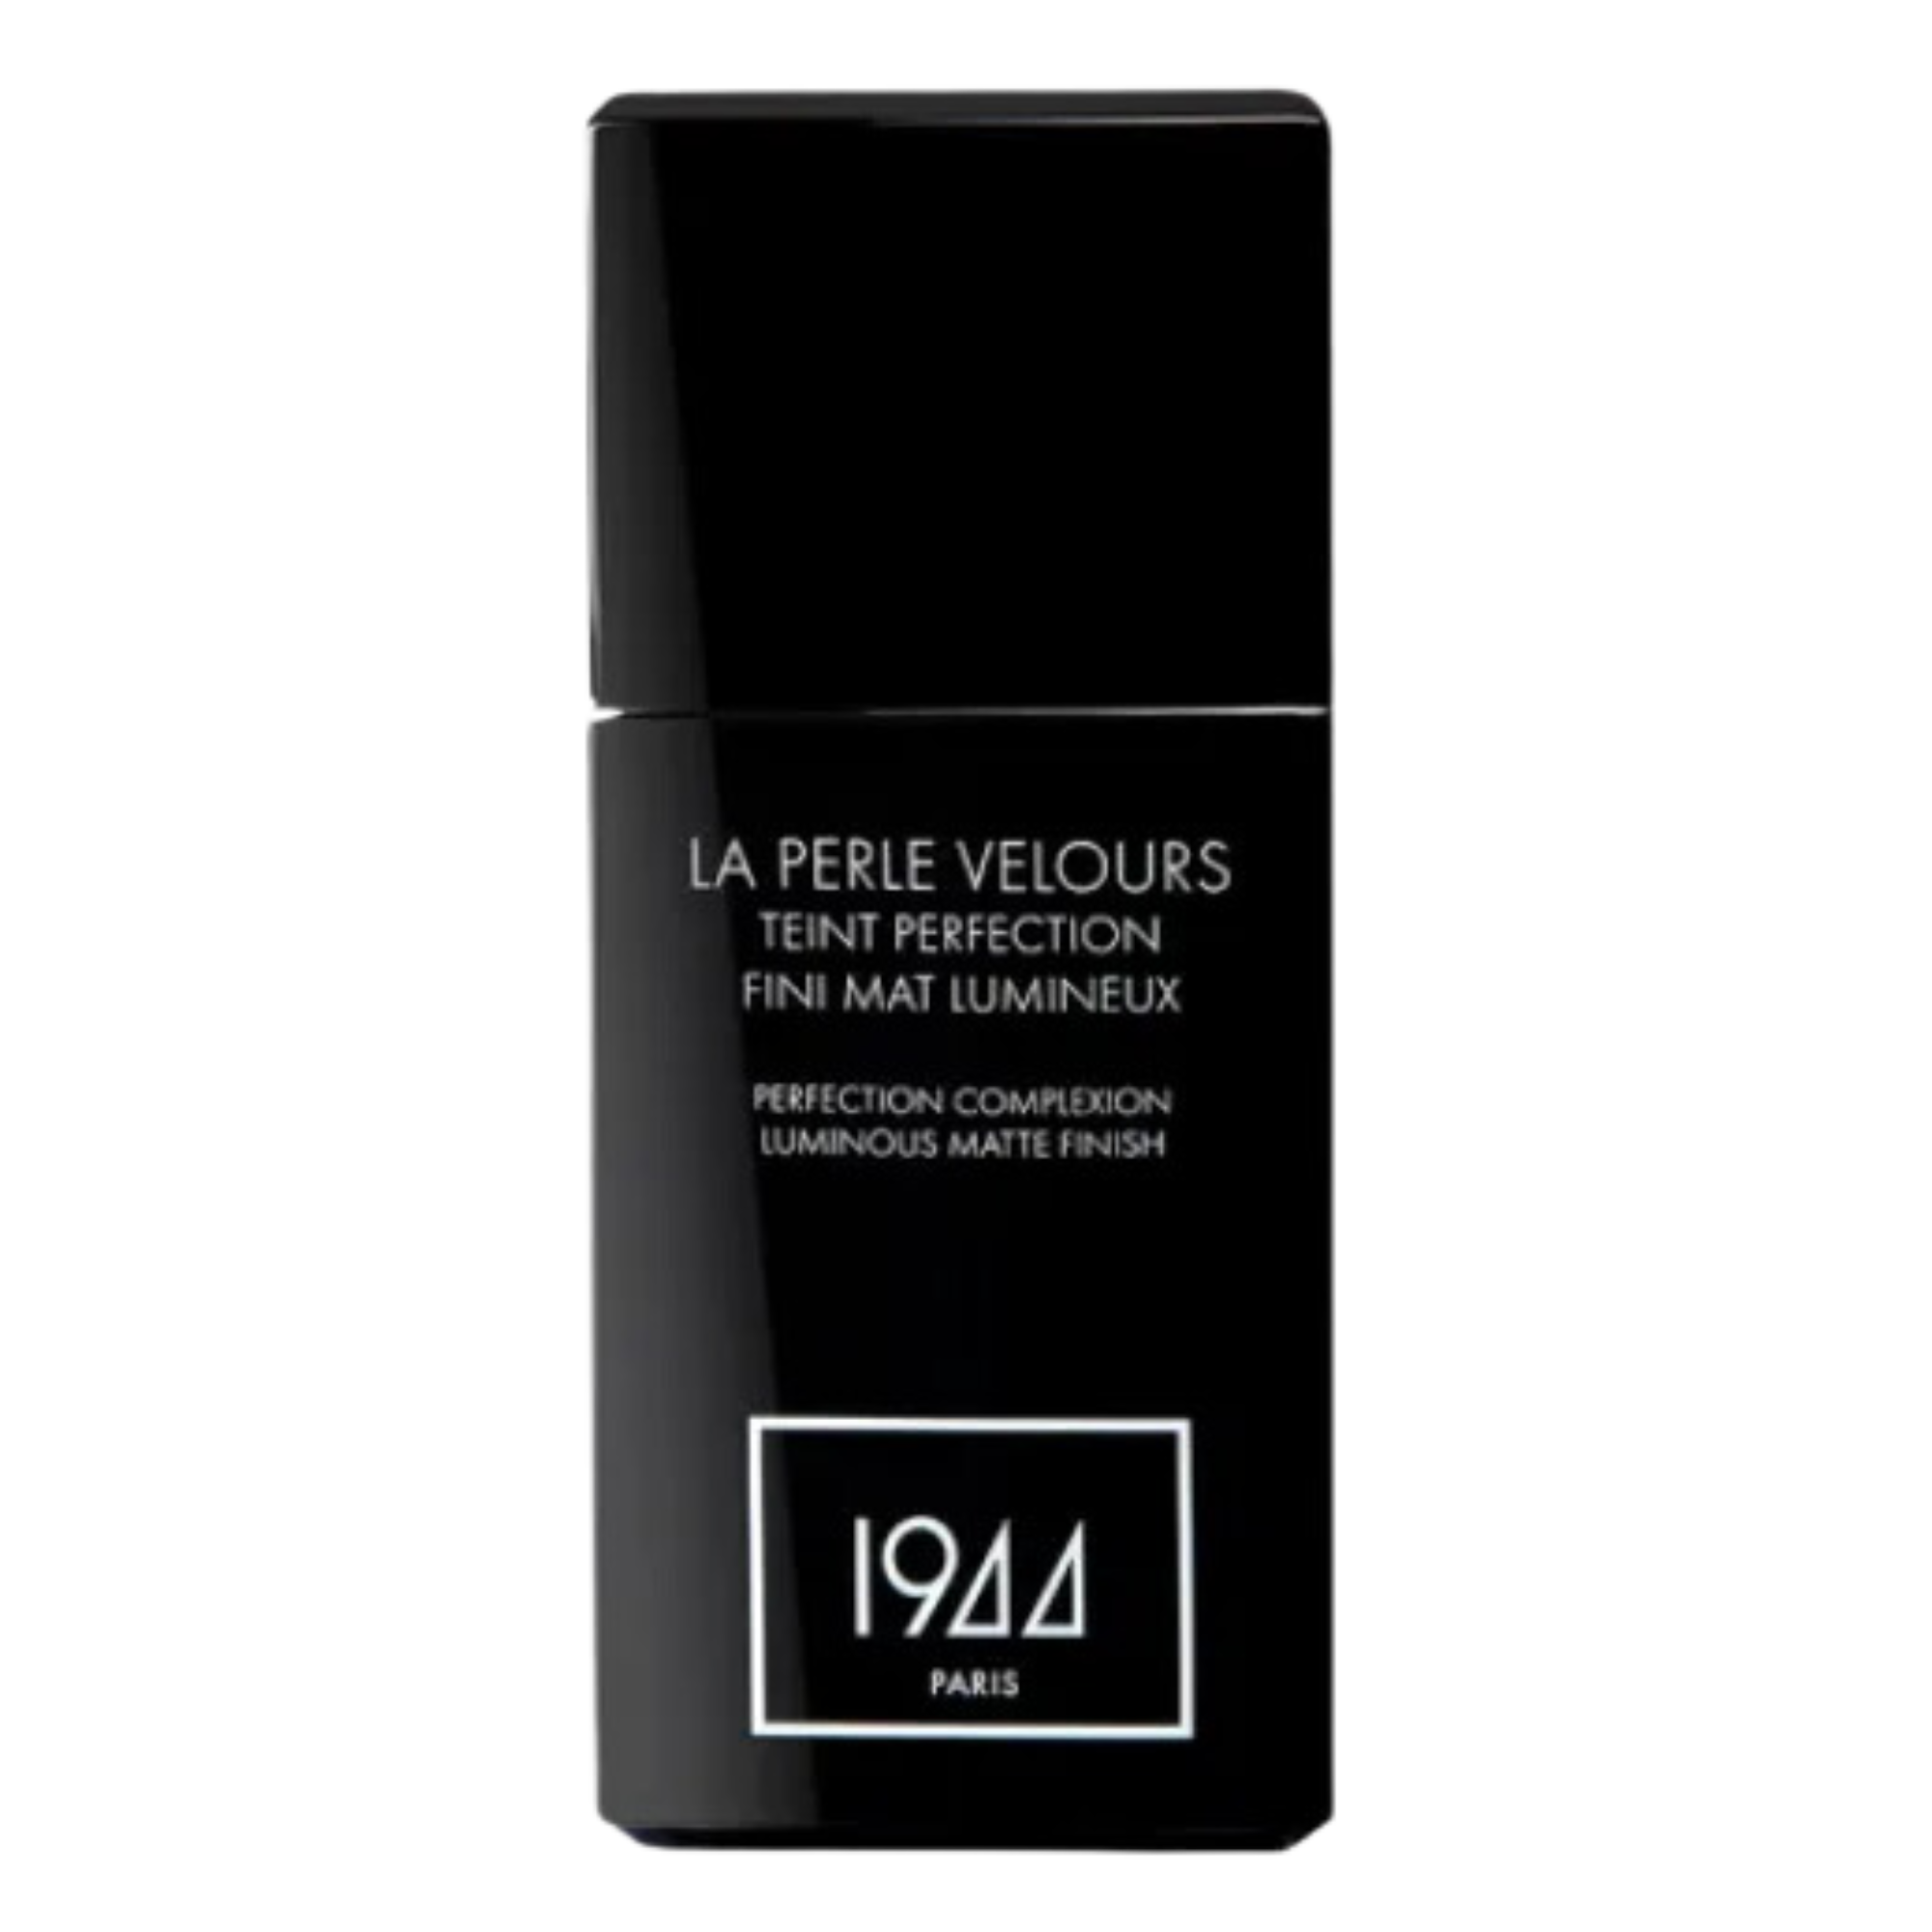 Тональный крем для лица ft203 бежевый ду 1944 Paris La Perle Velours, 30 мл